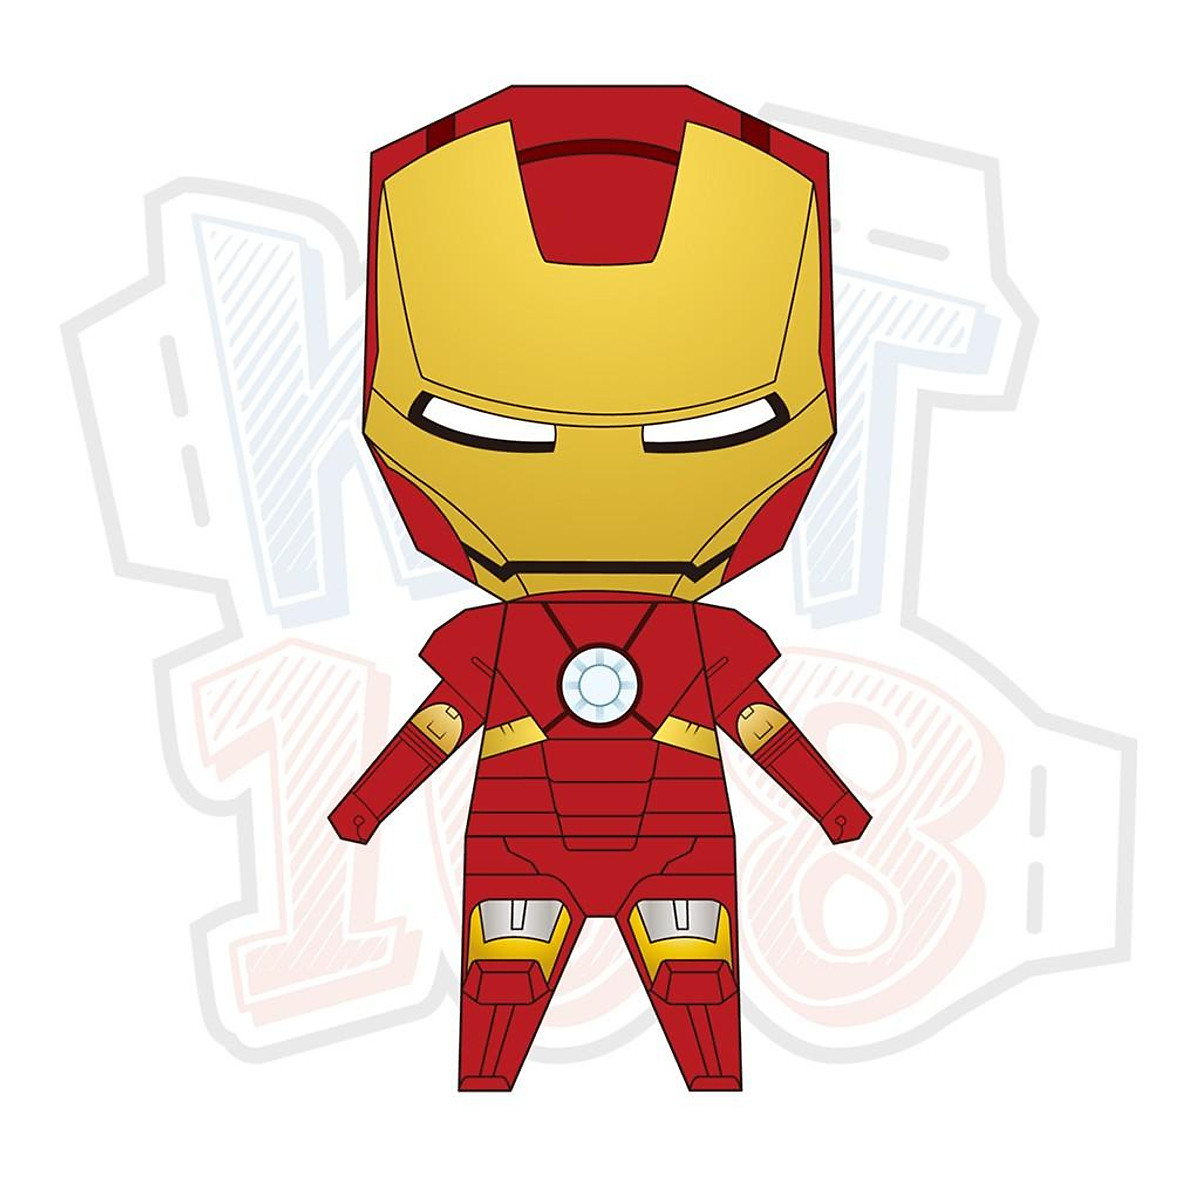 Iron Man - một trong những nhân vật siêu anh hùng nổi tiếng của Marvel sở hữu bộ giáp công nghệ cao và trí thông minh nhân tạo. Hãy xem hình ảnh liên quan để khám phá thêm về hành trình của Tony Stark vượt qua thử thách để trở thành Iron Man và chiến đấu bảo vệ thế giới.